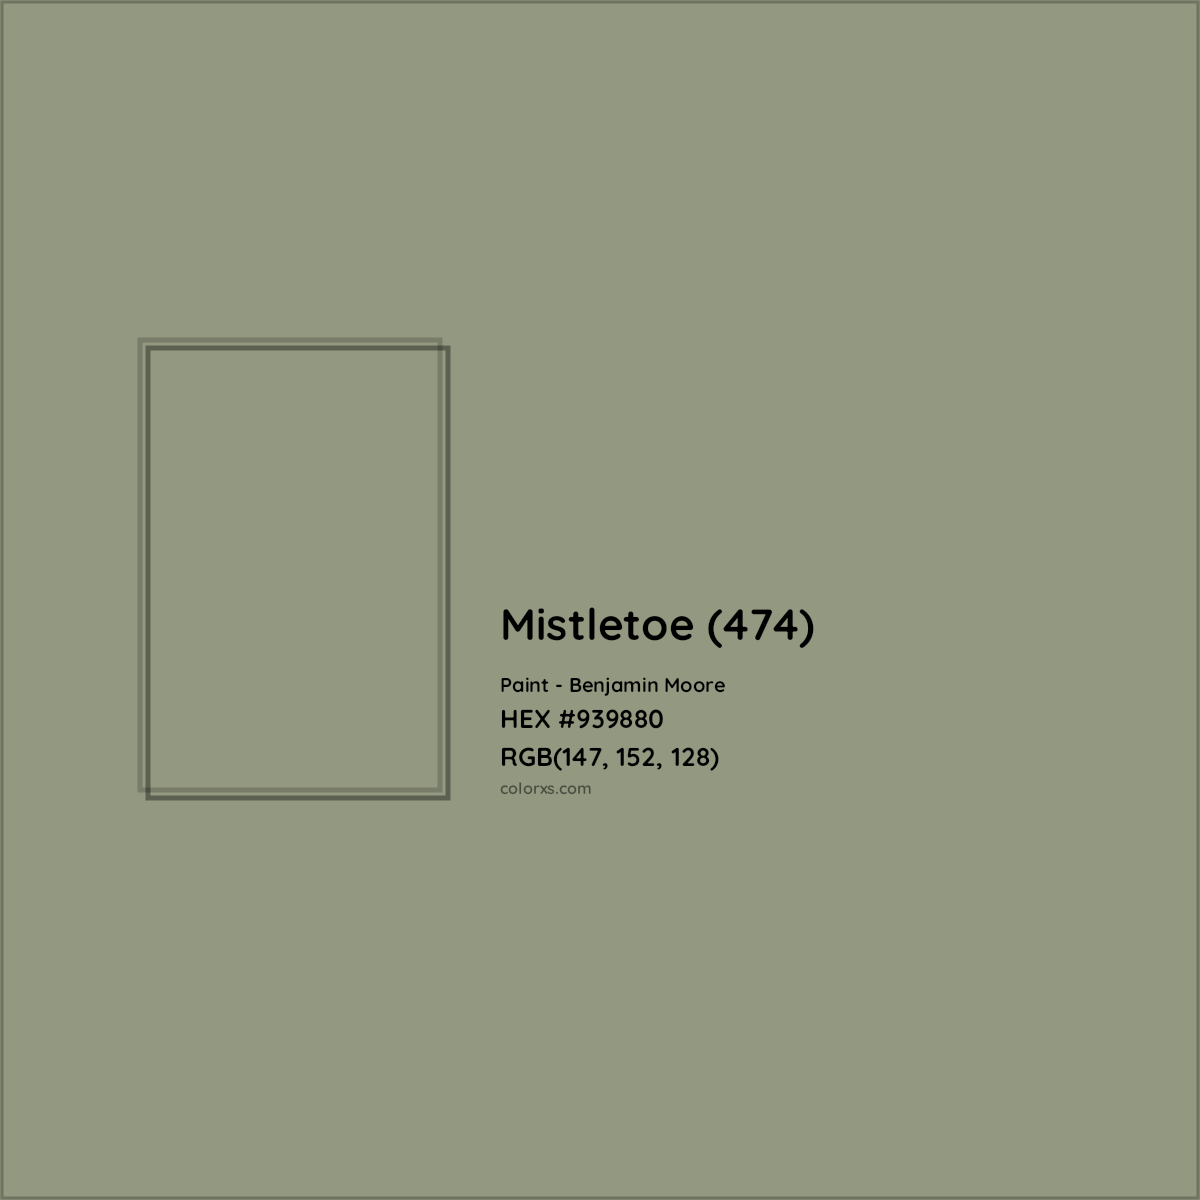 HEX #939880 Mistletoe (474) Paint Benjamin Moore - Color Code